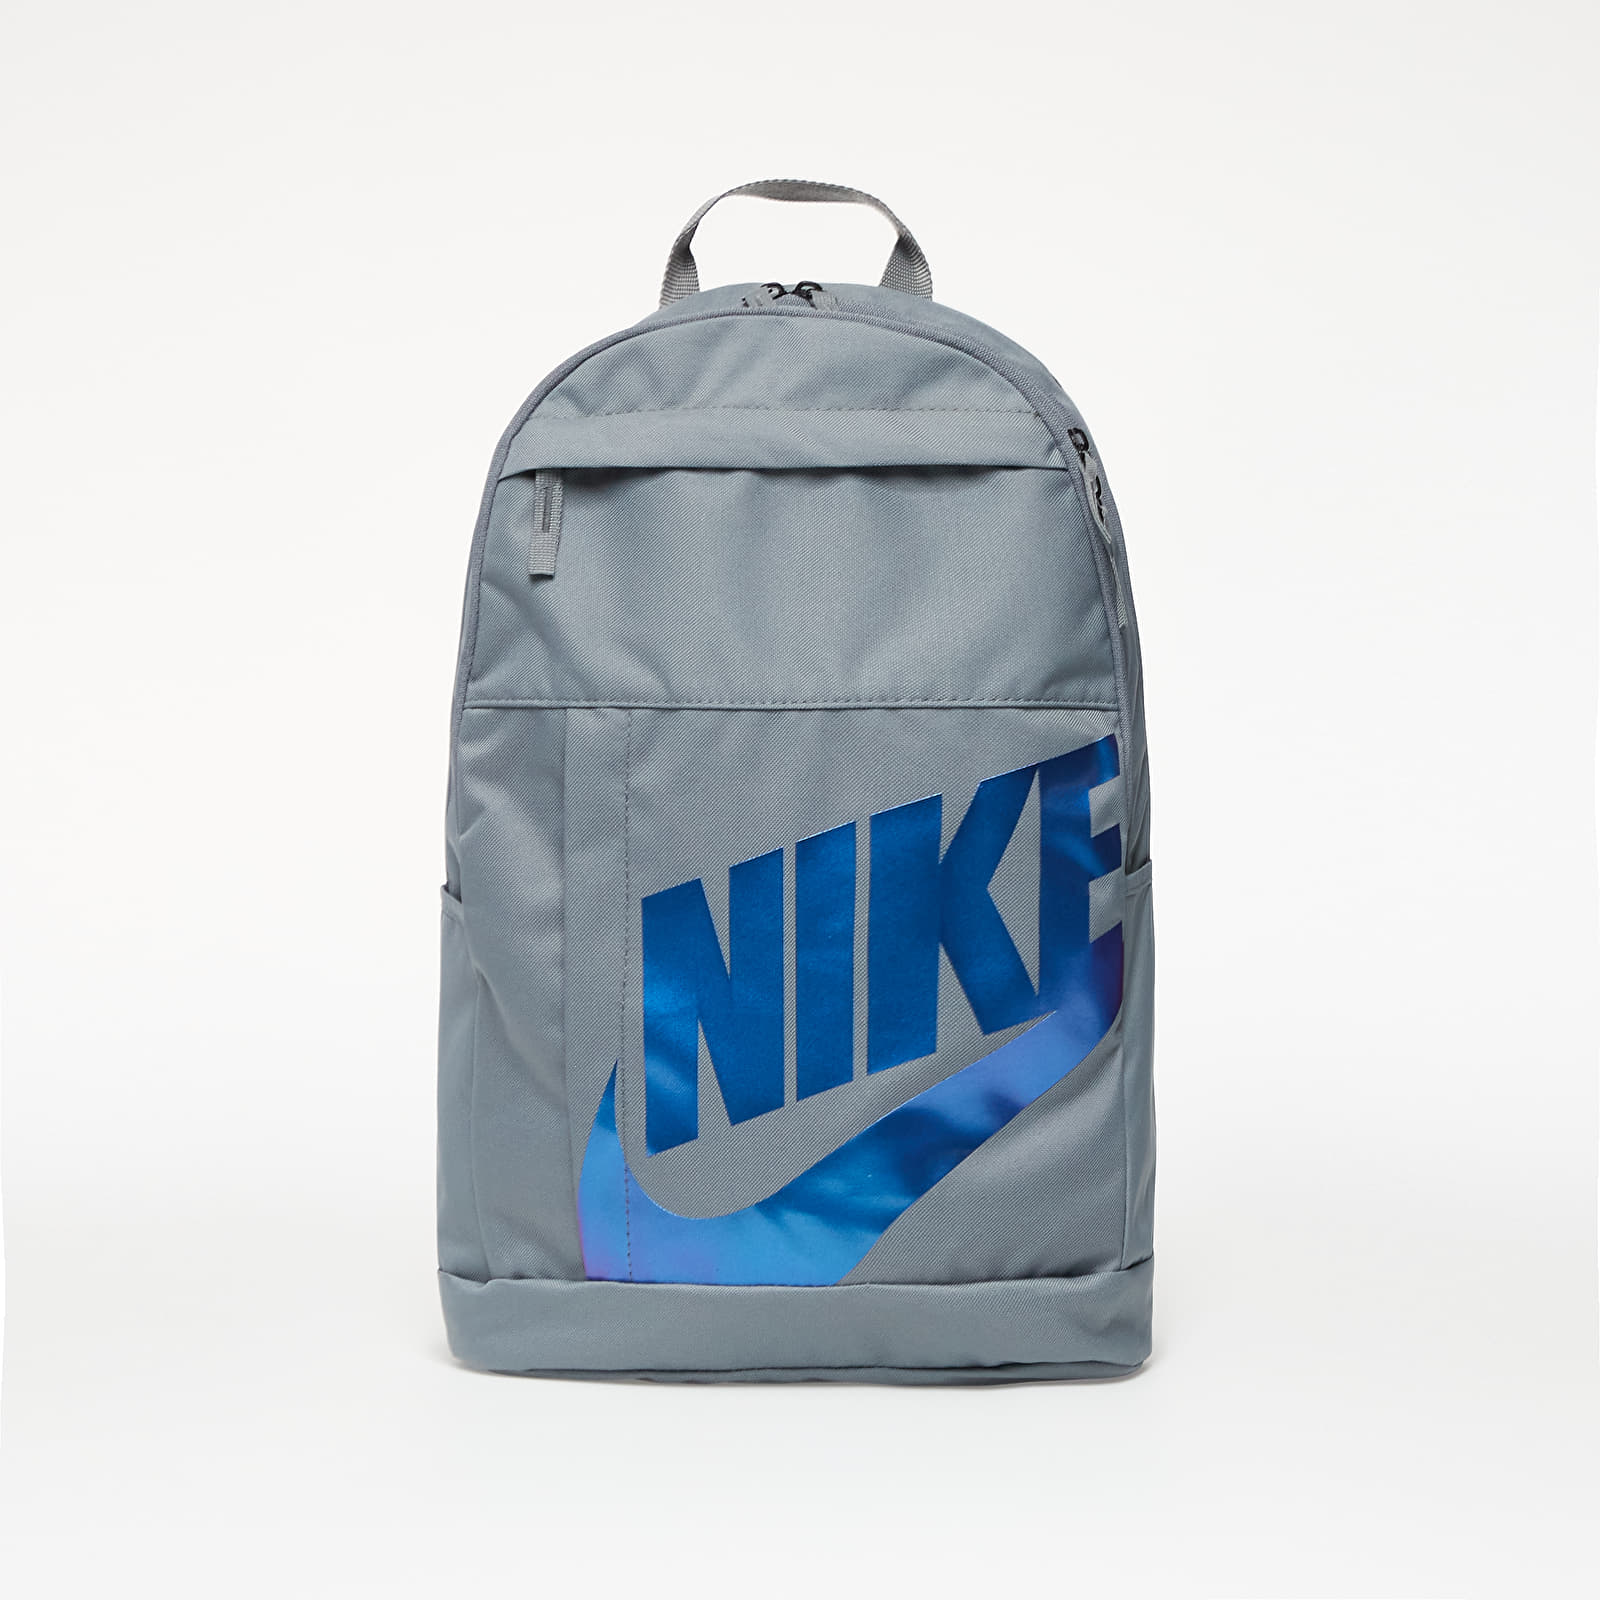 Rucsacuri Nike Backpack Grey